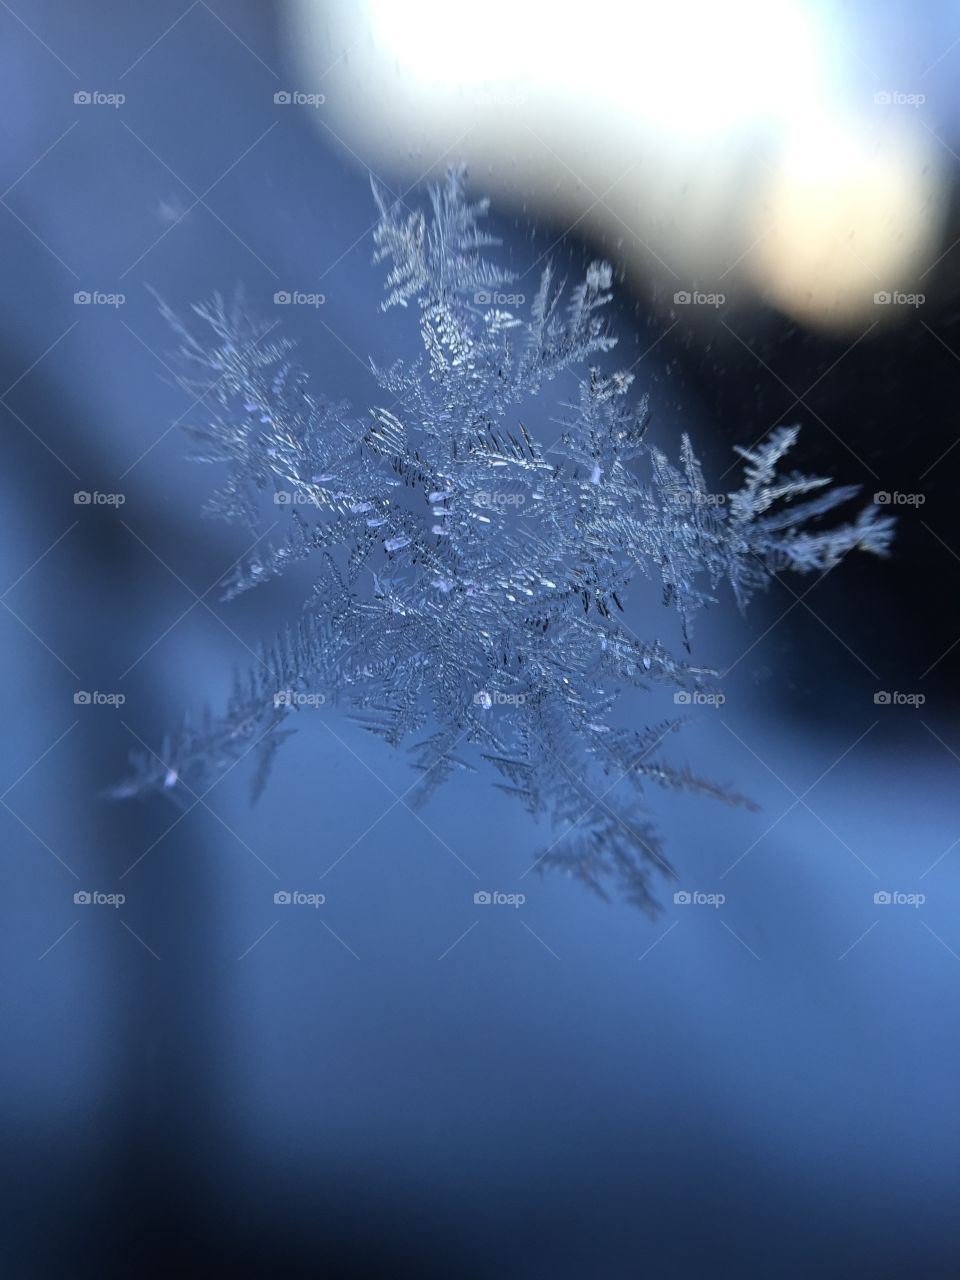 Frost on a car window